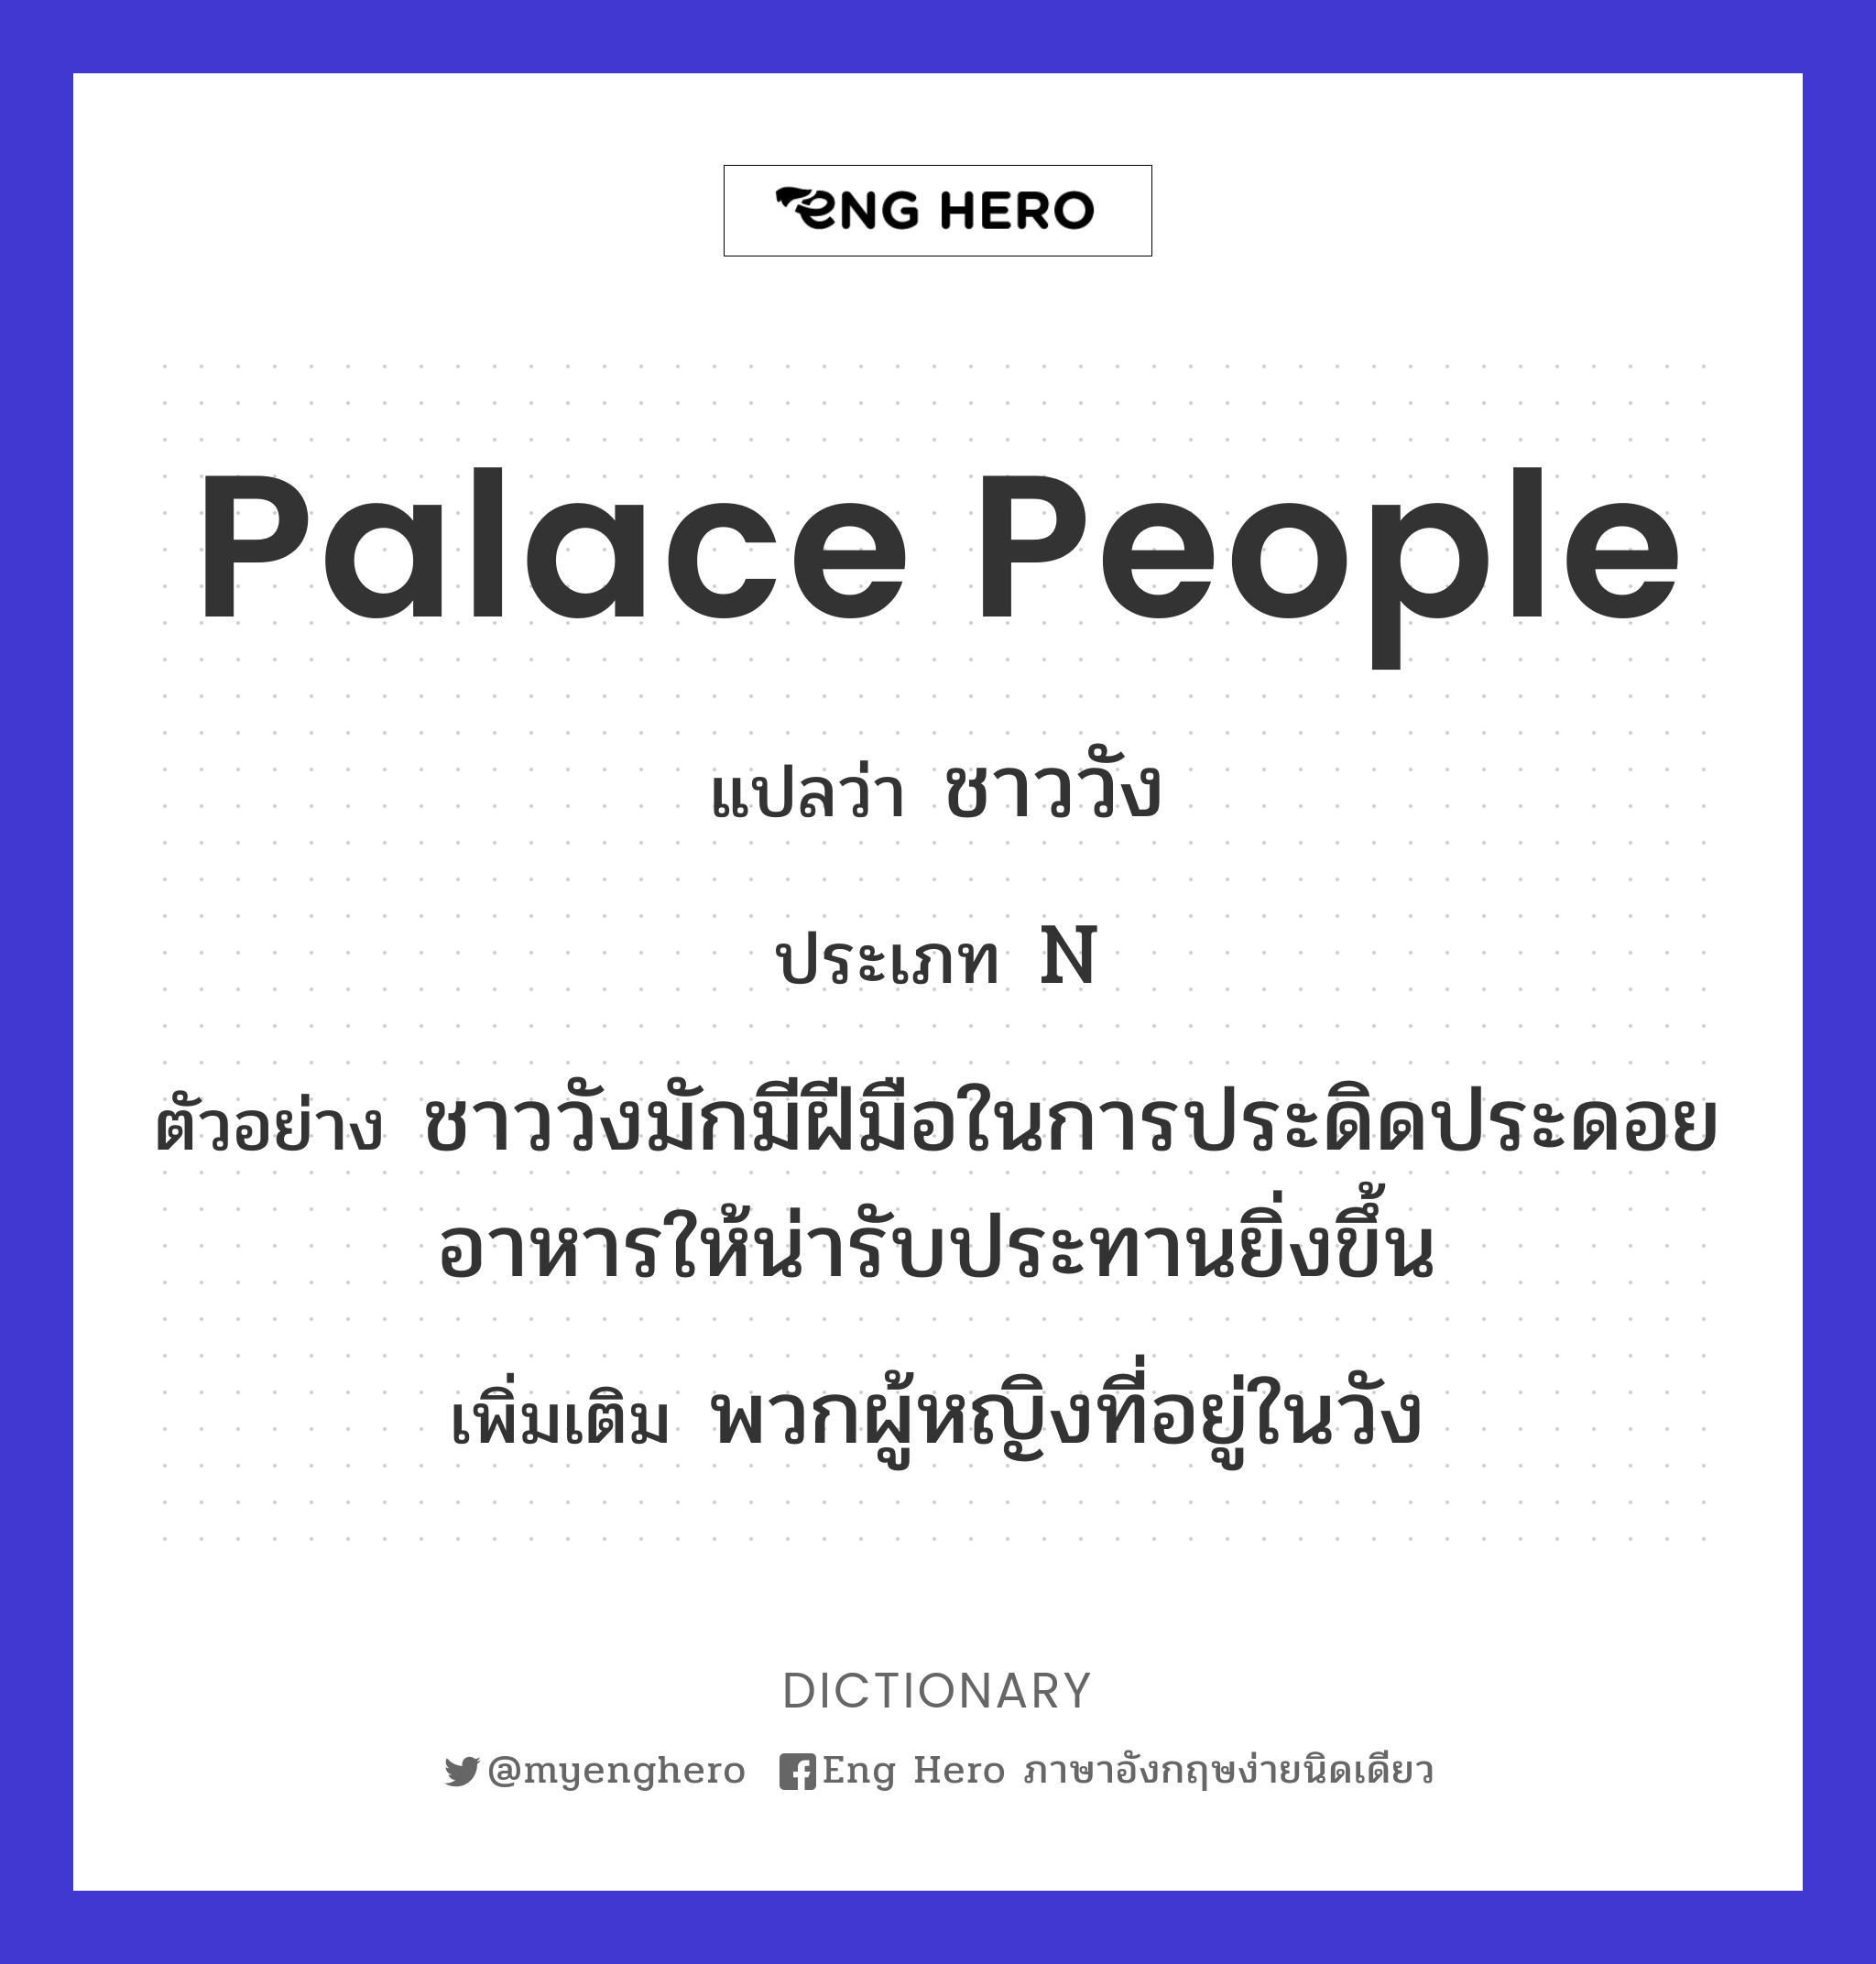 palace people